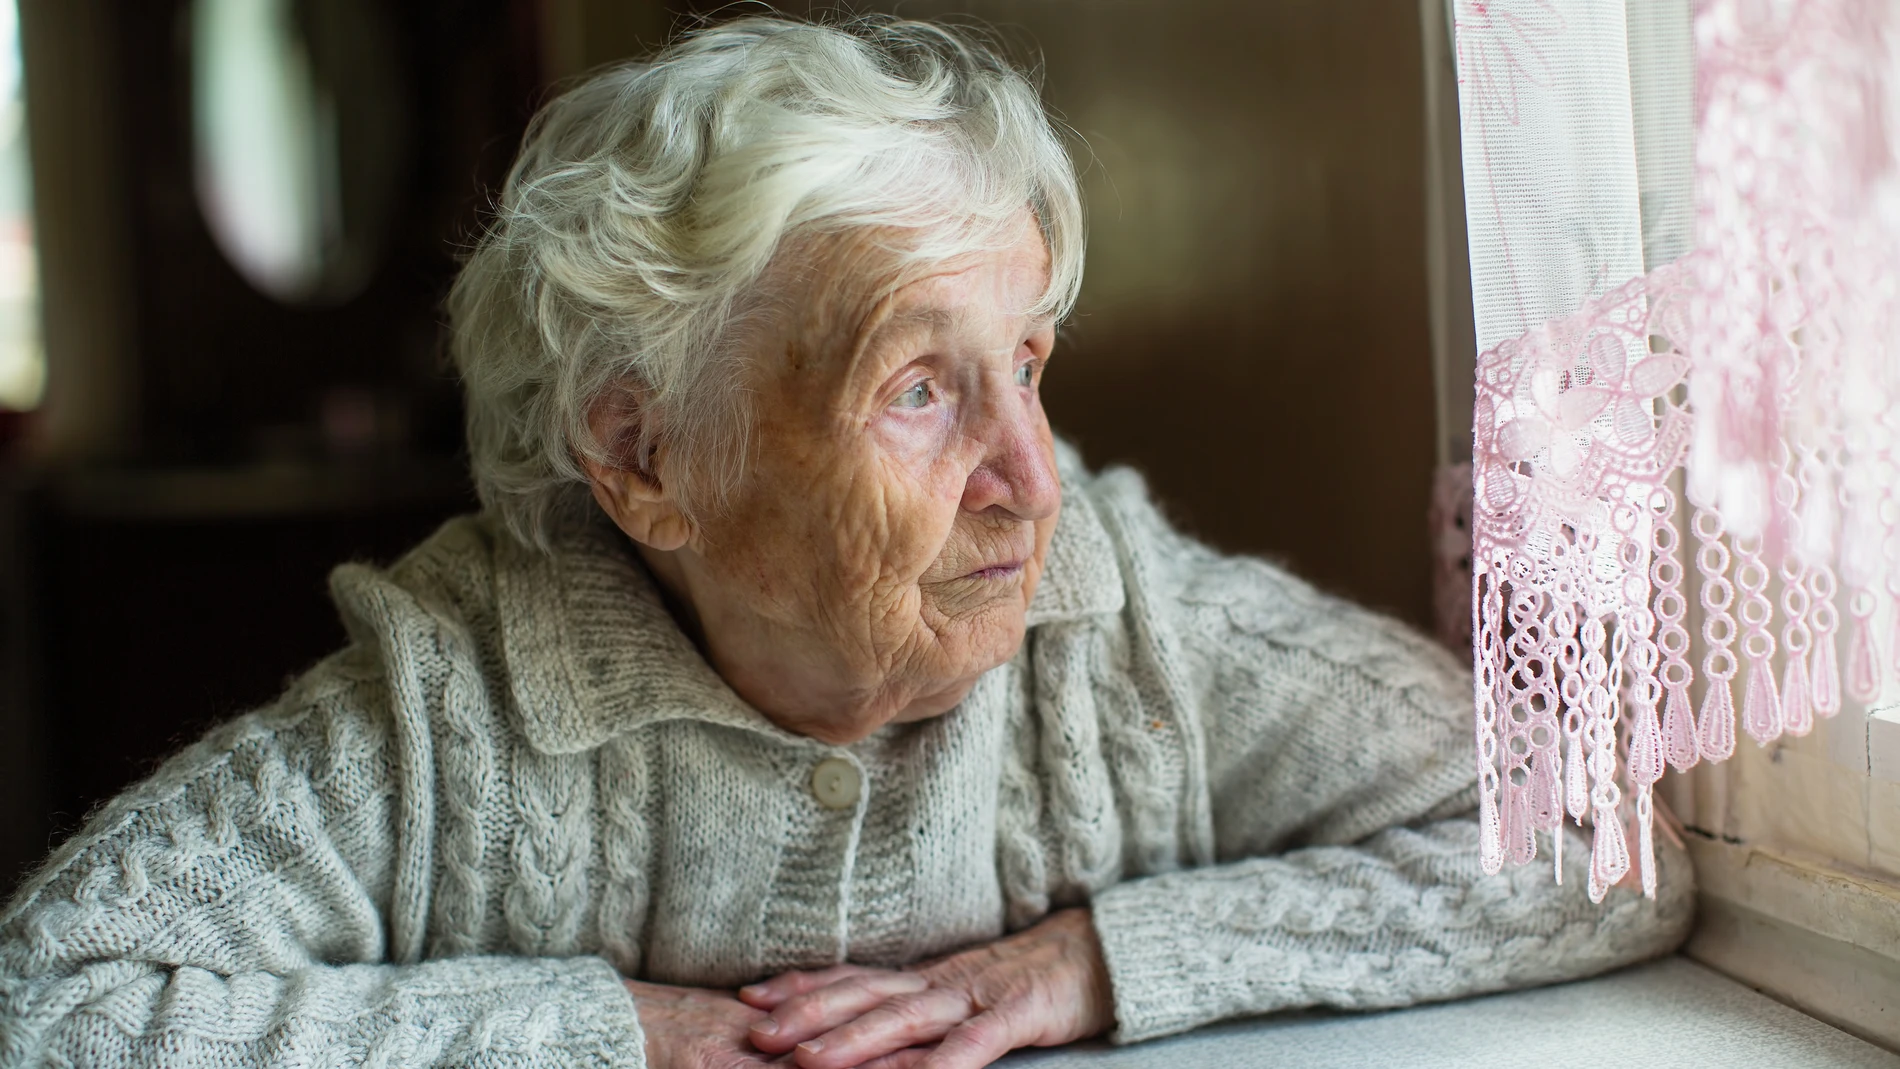 El confinamiento ha podido agravar las situaciones de soledad en las personas mayores